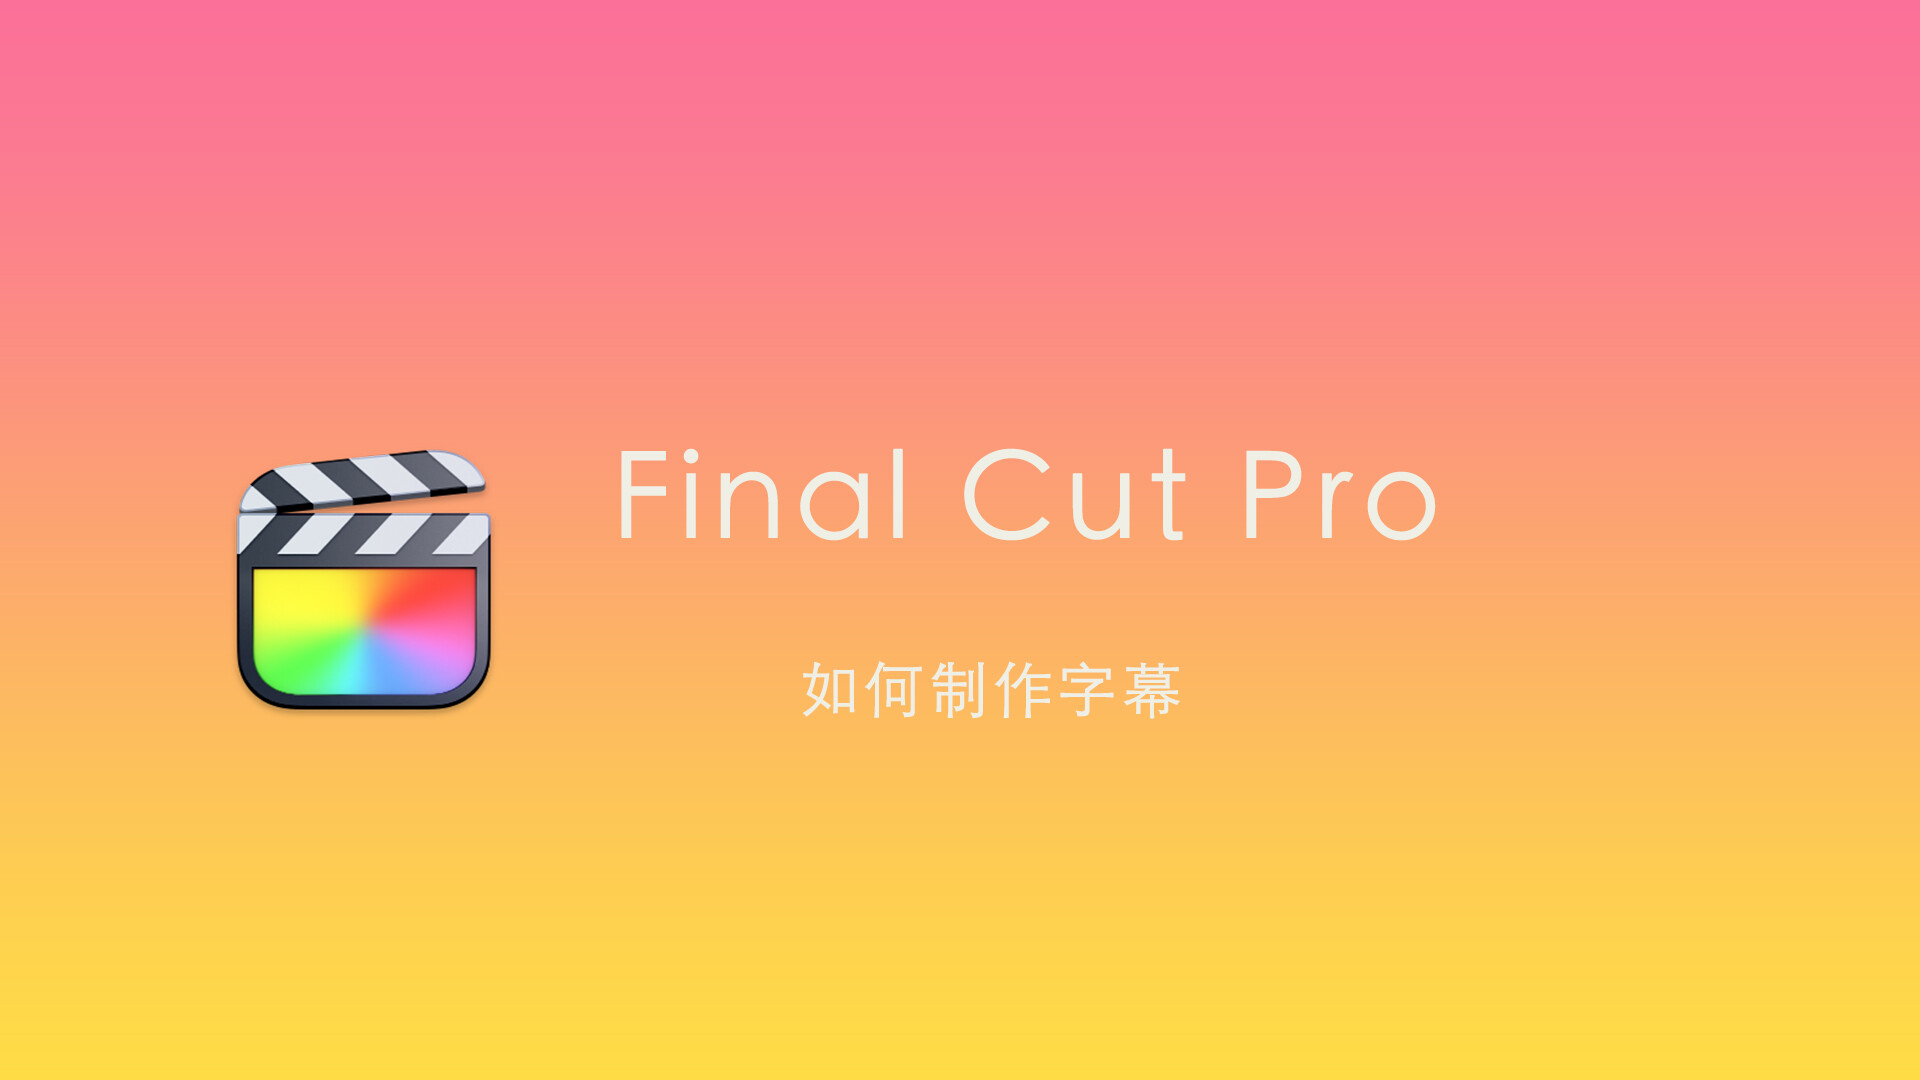 Final Cut Pro 中文新手教程 (32)fcpx如何创建字幕